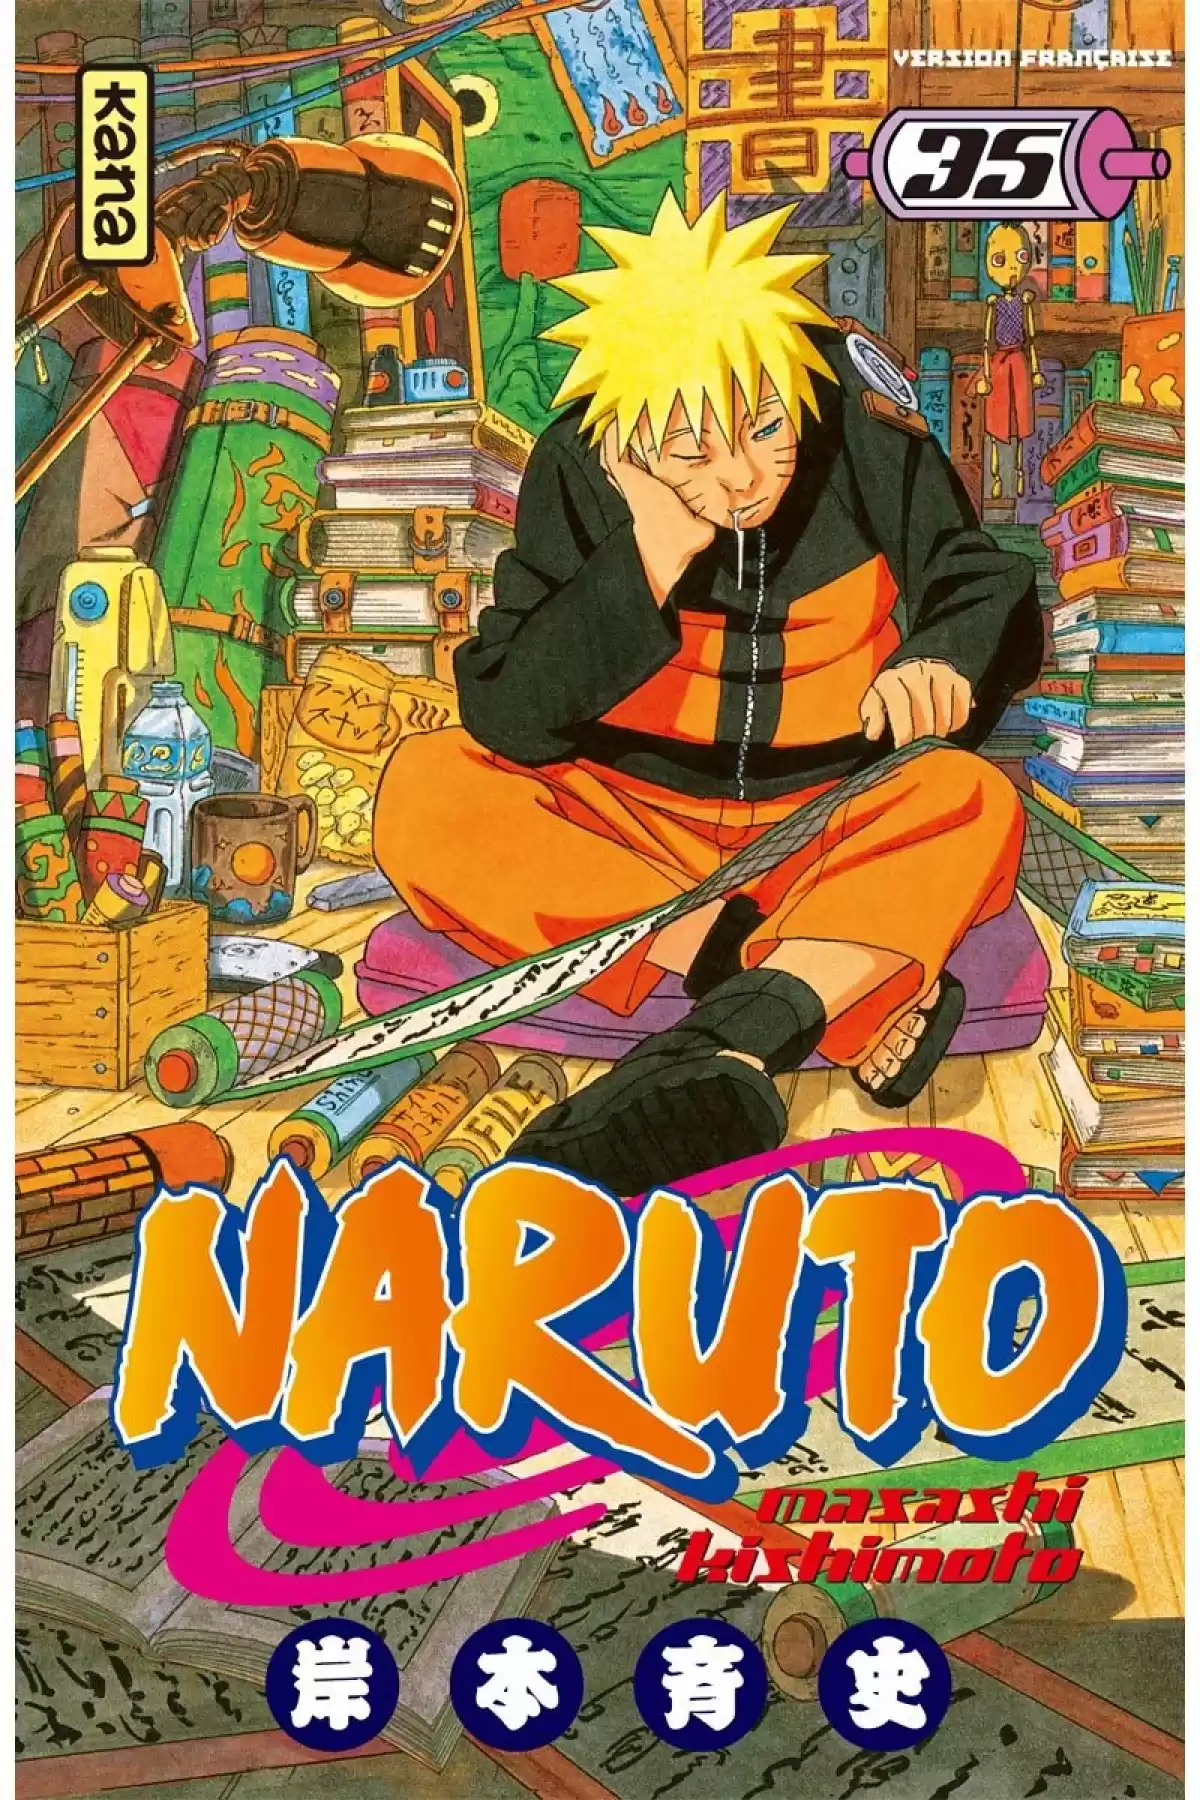 Naruto Volume 35 page 1